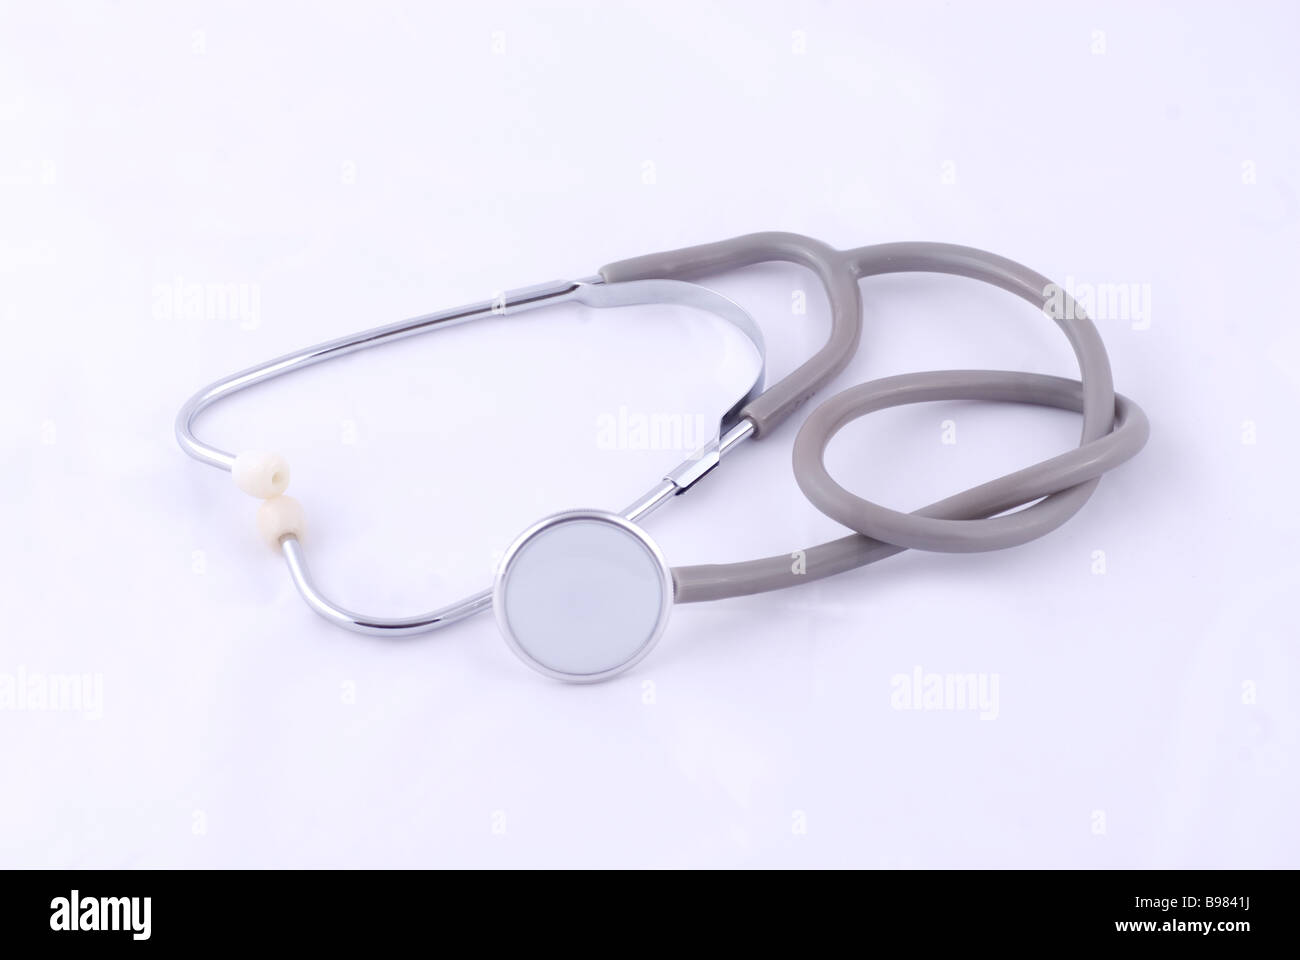 Nodo in uno stetoscopio intaglio su sfondo bianco Foto Stock